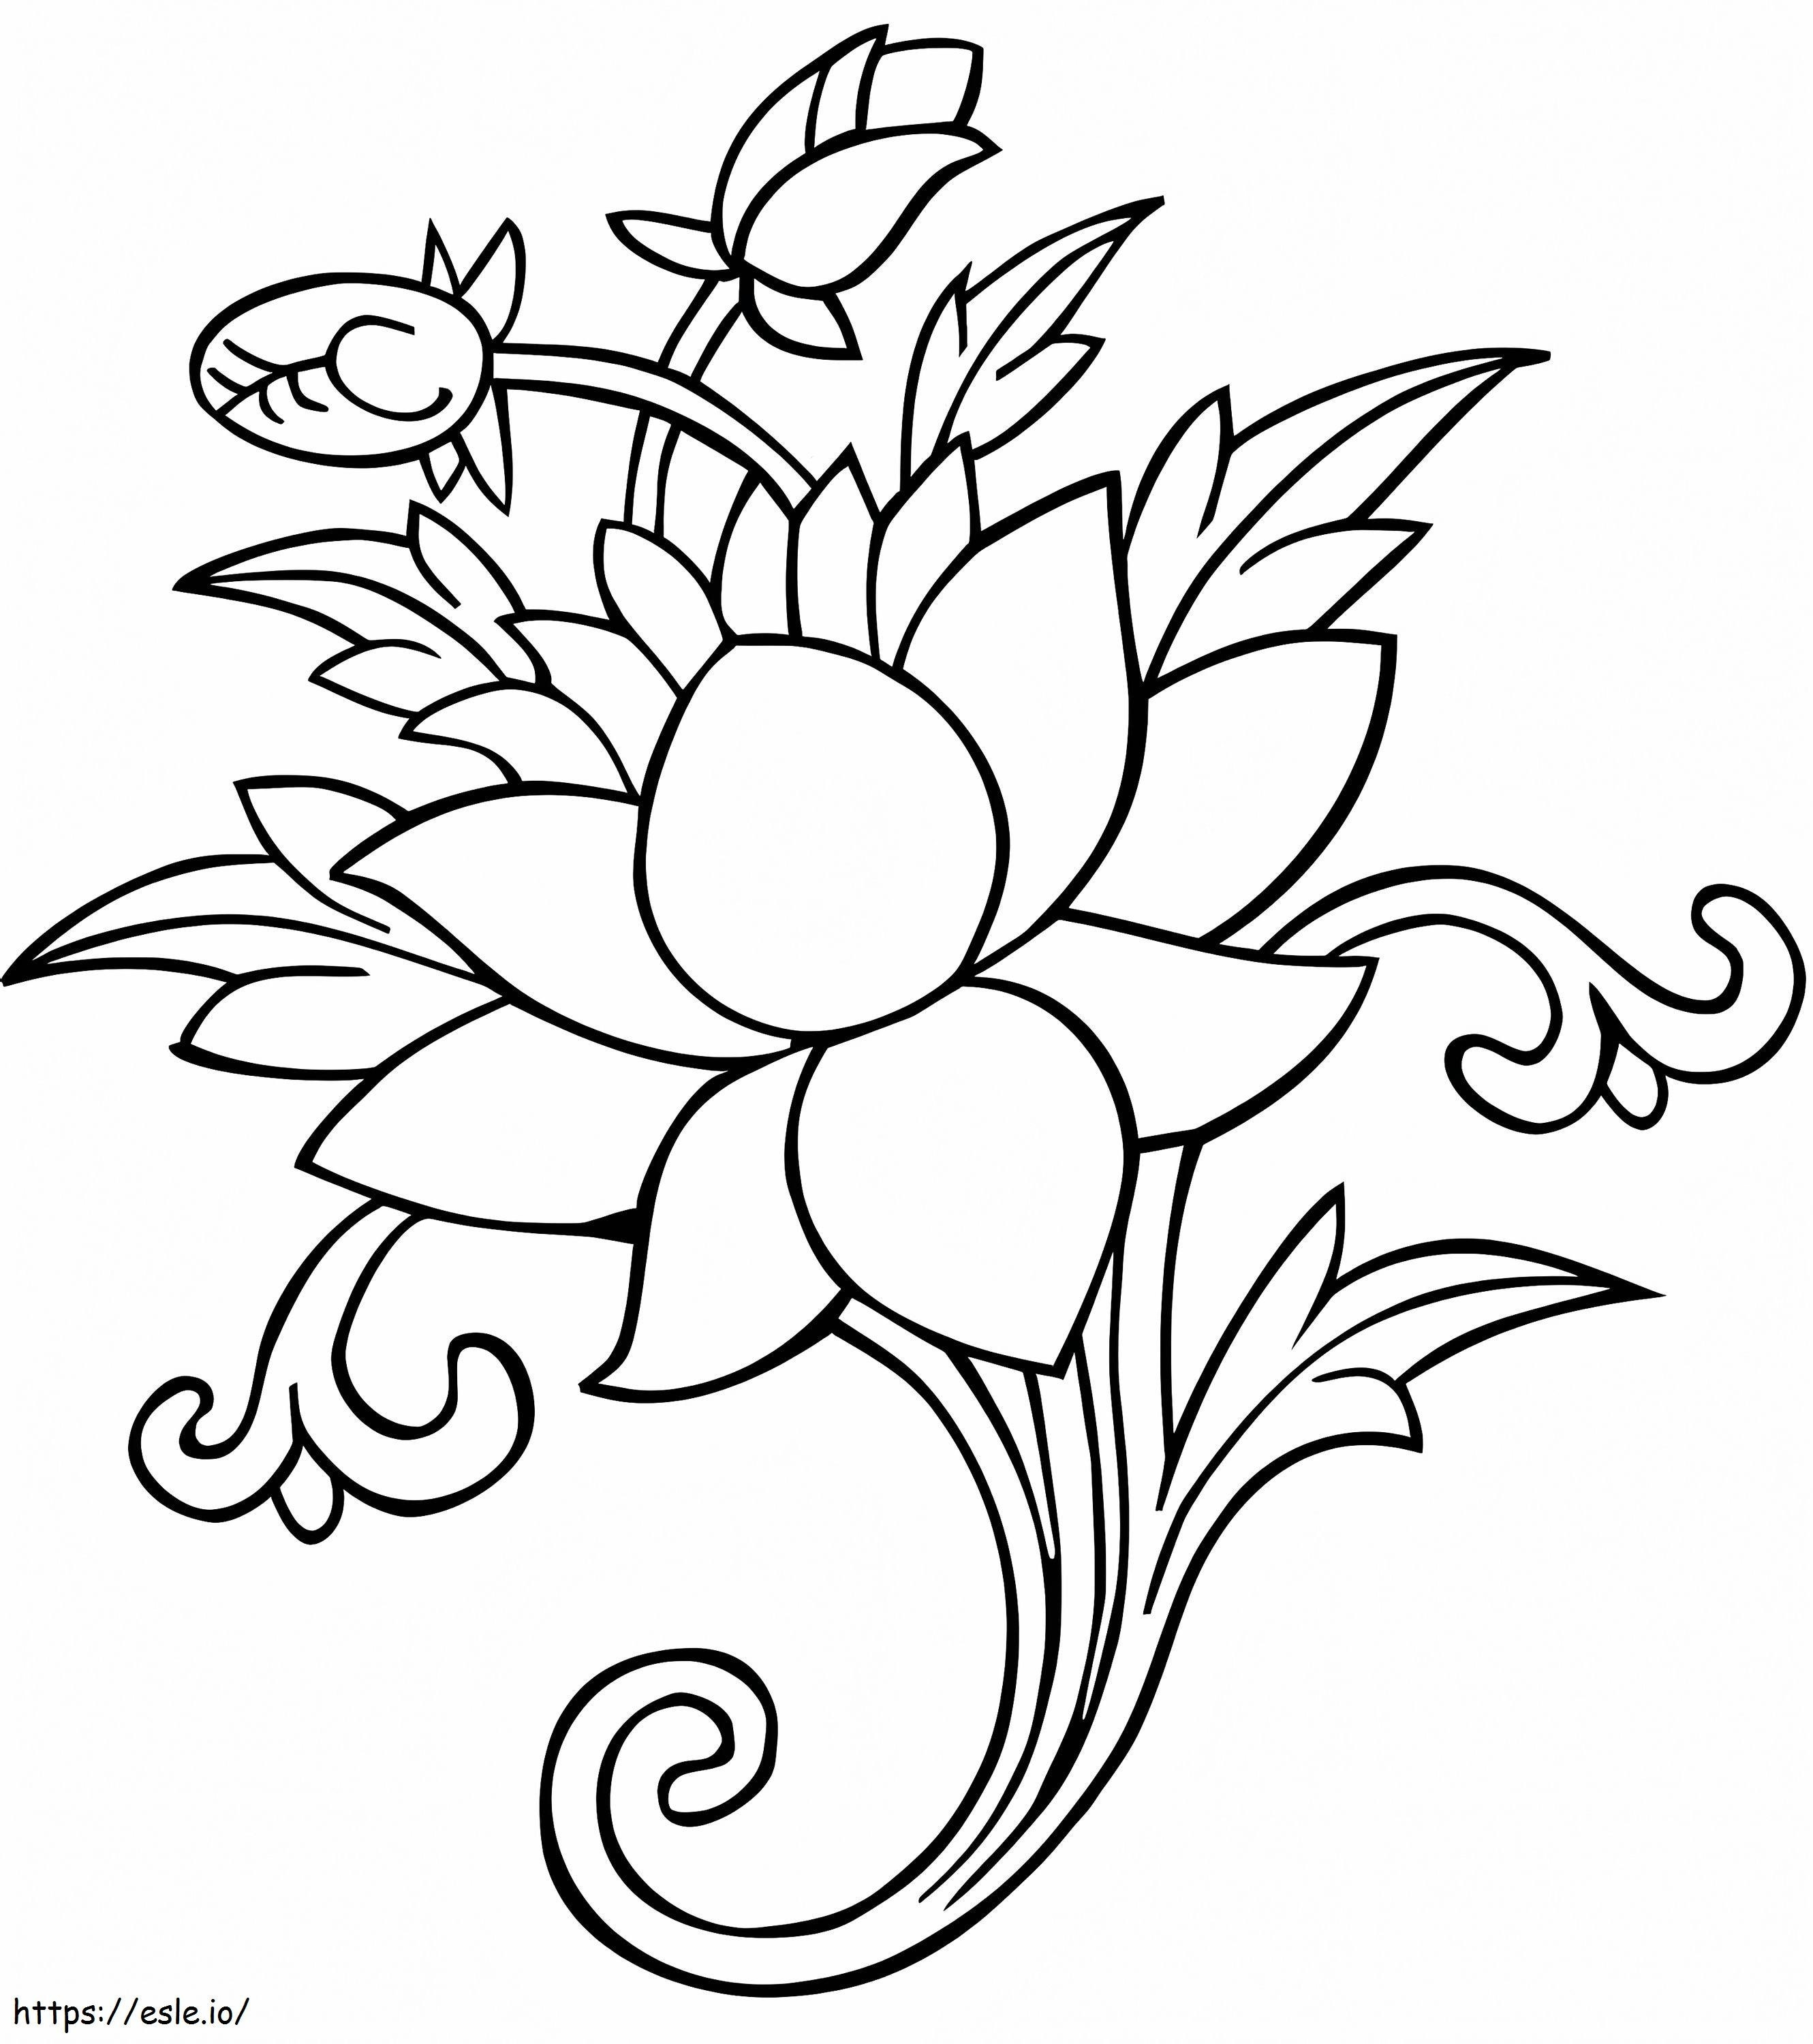 Ashtamangala-lotus kleurplaat kleurplaat